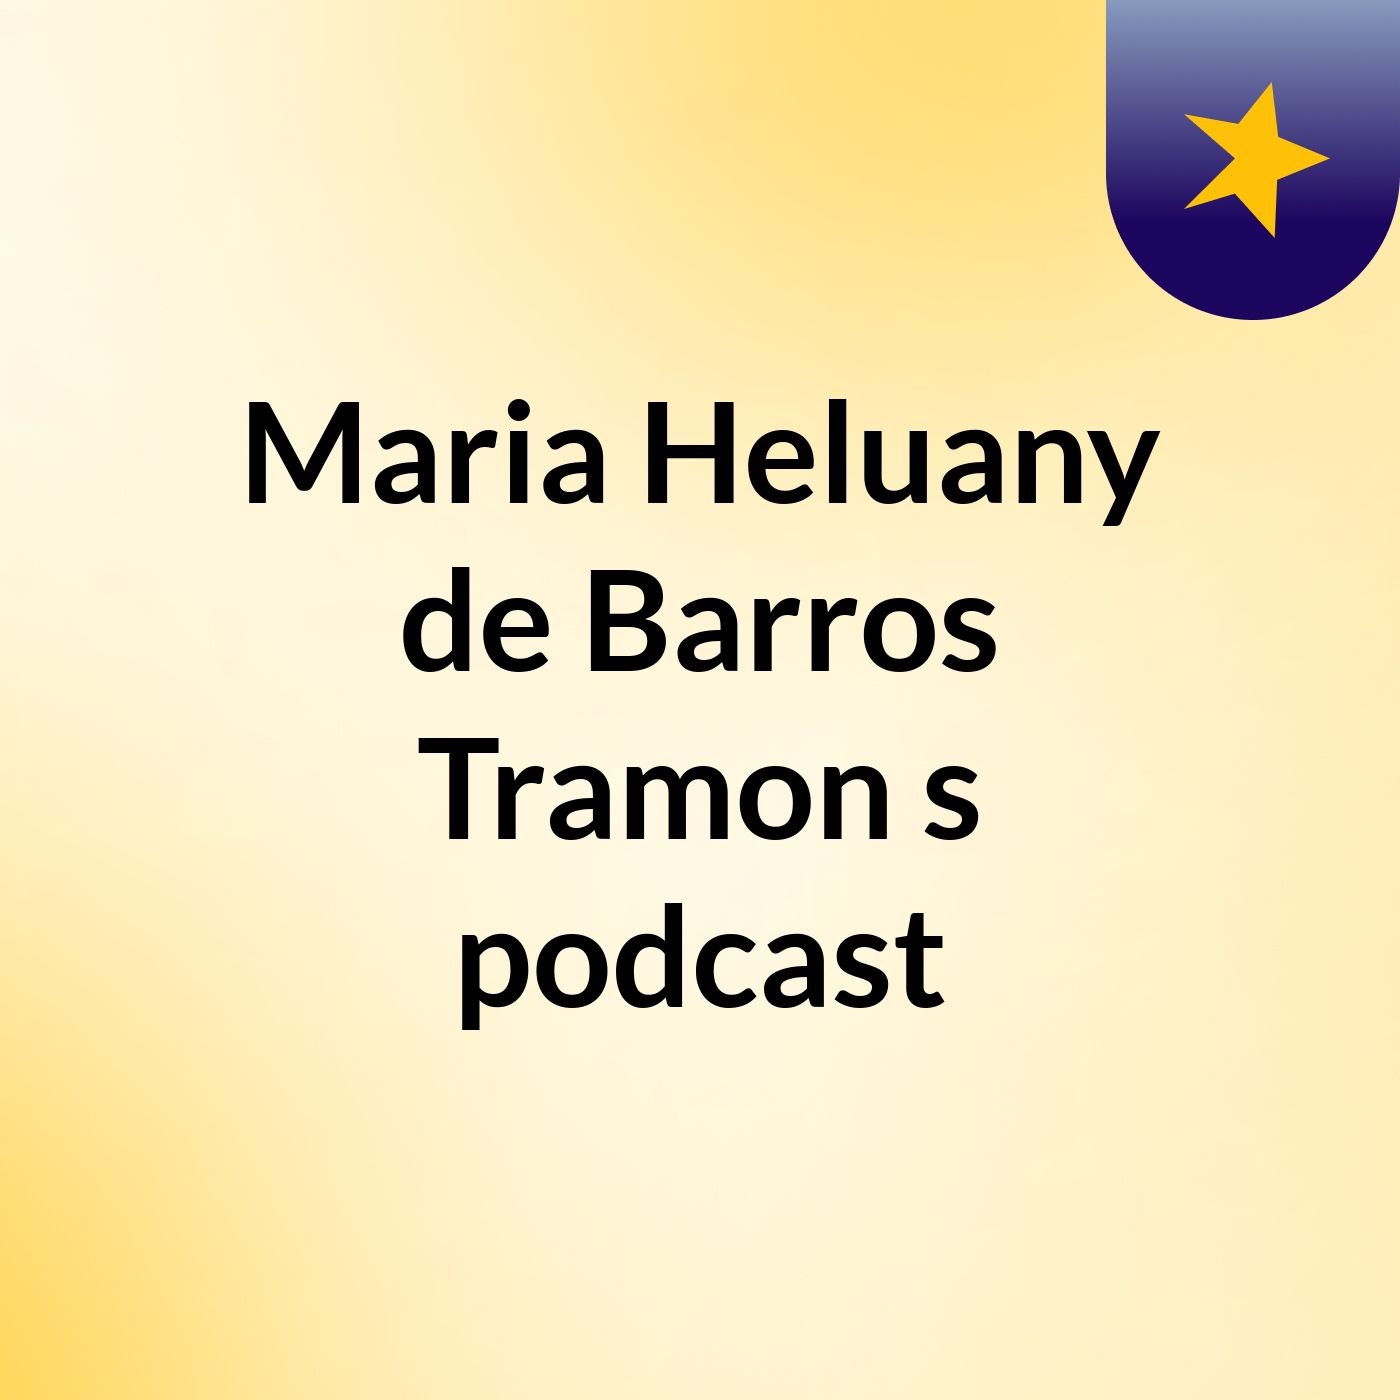 Maria Heluany de Barros Tramon's podcast